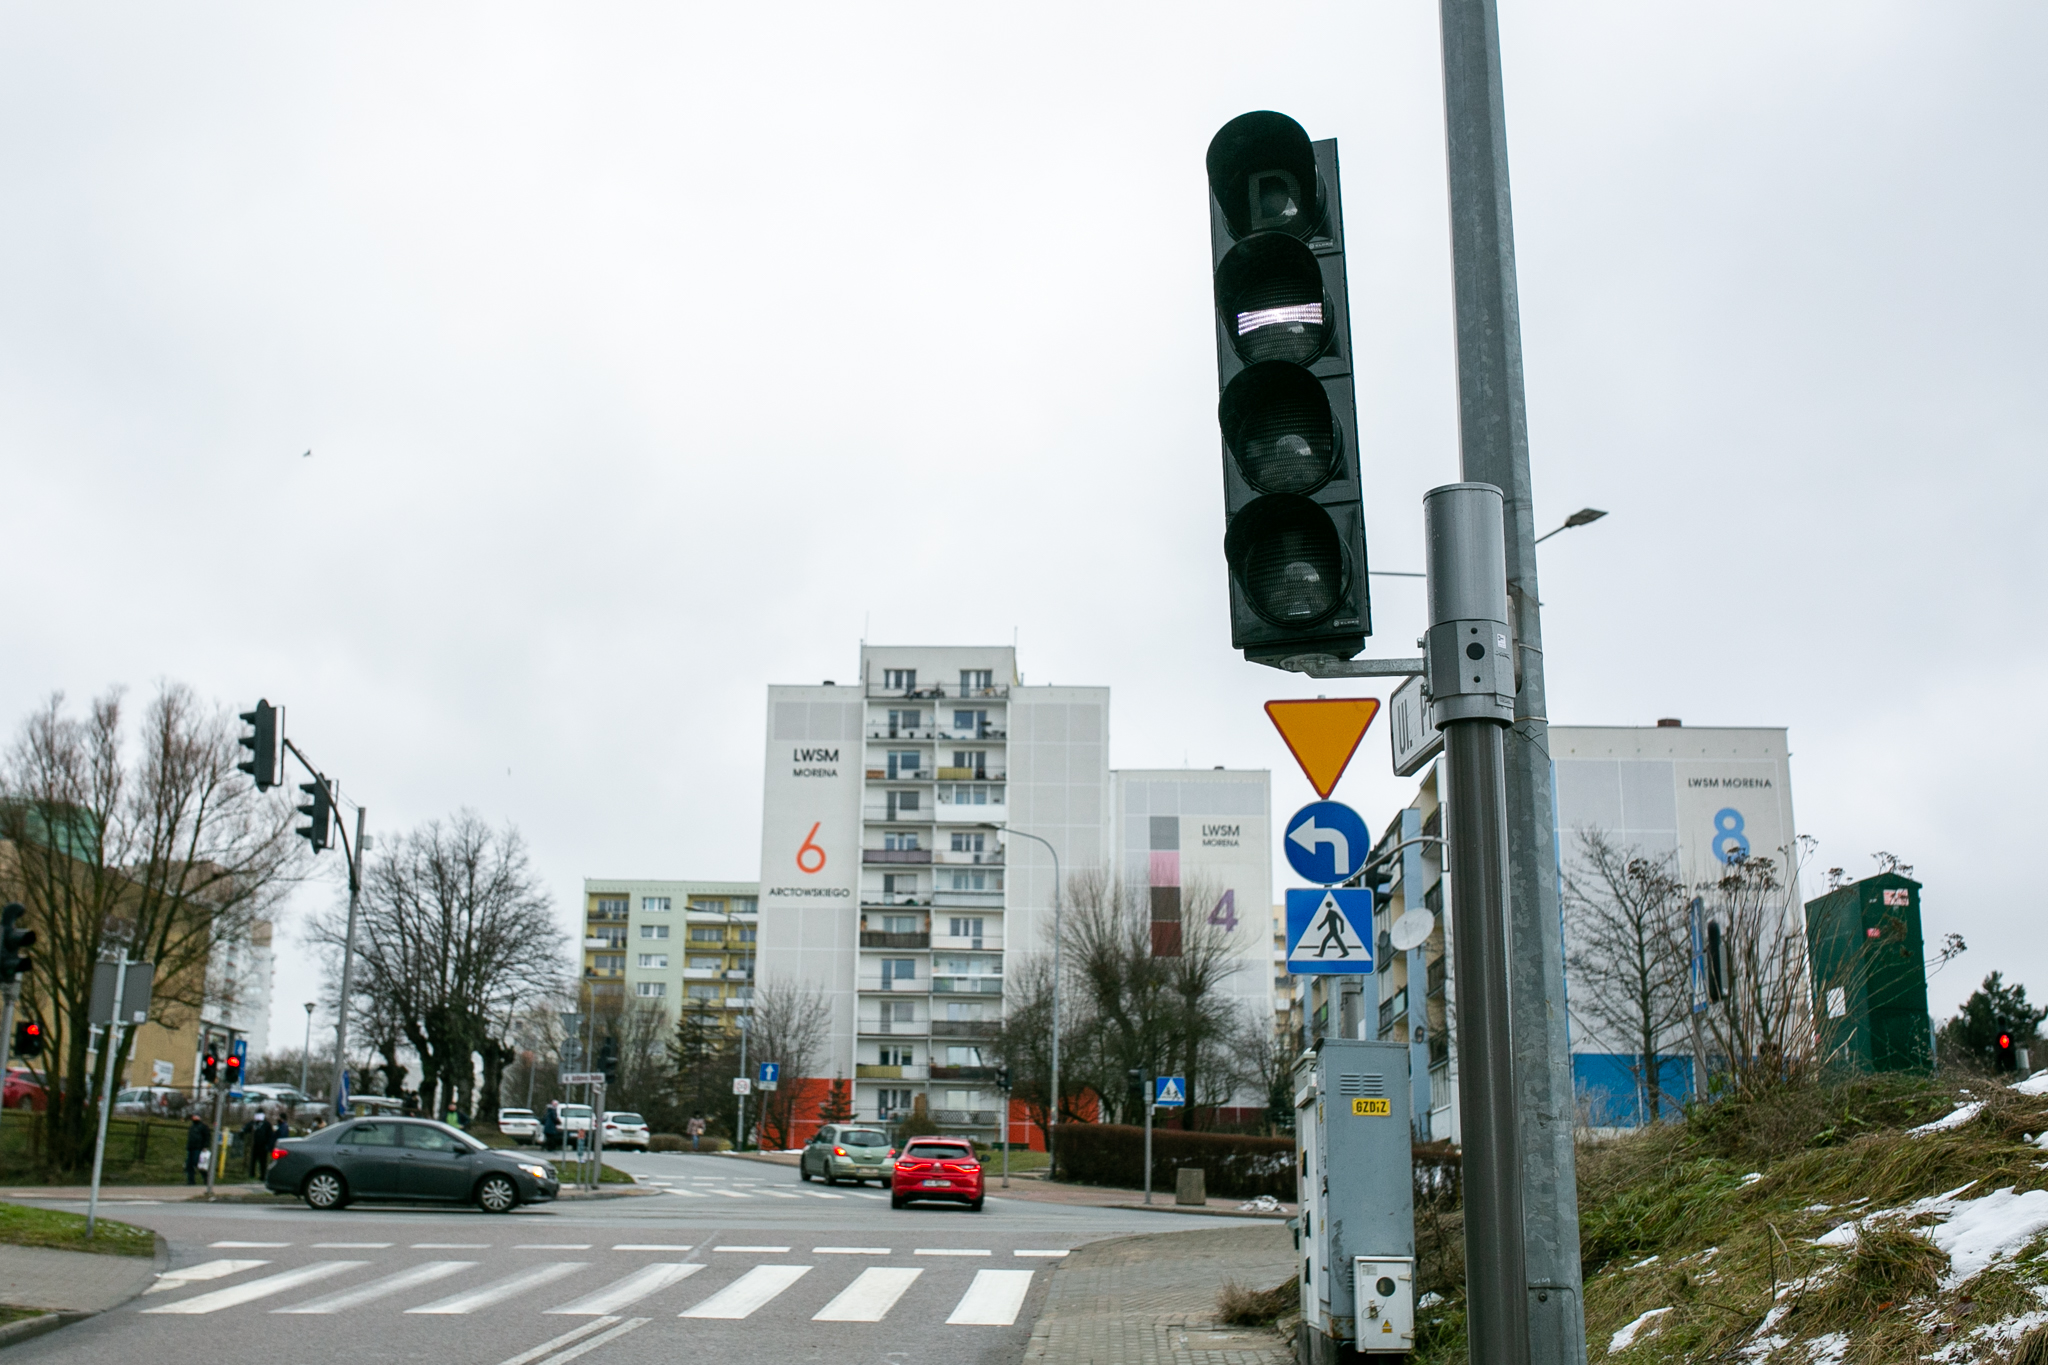 Na zdjęciu widoczny jest nowy sygnalizator świetlny dla autobusów na skrzyżowaniu ul. Piecewskiej i Jaśkowej Doliny